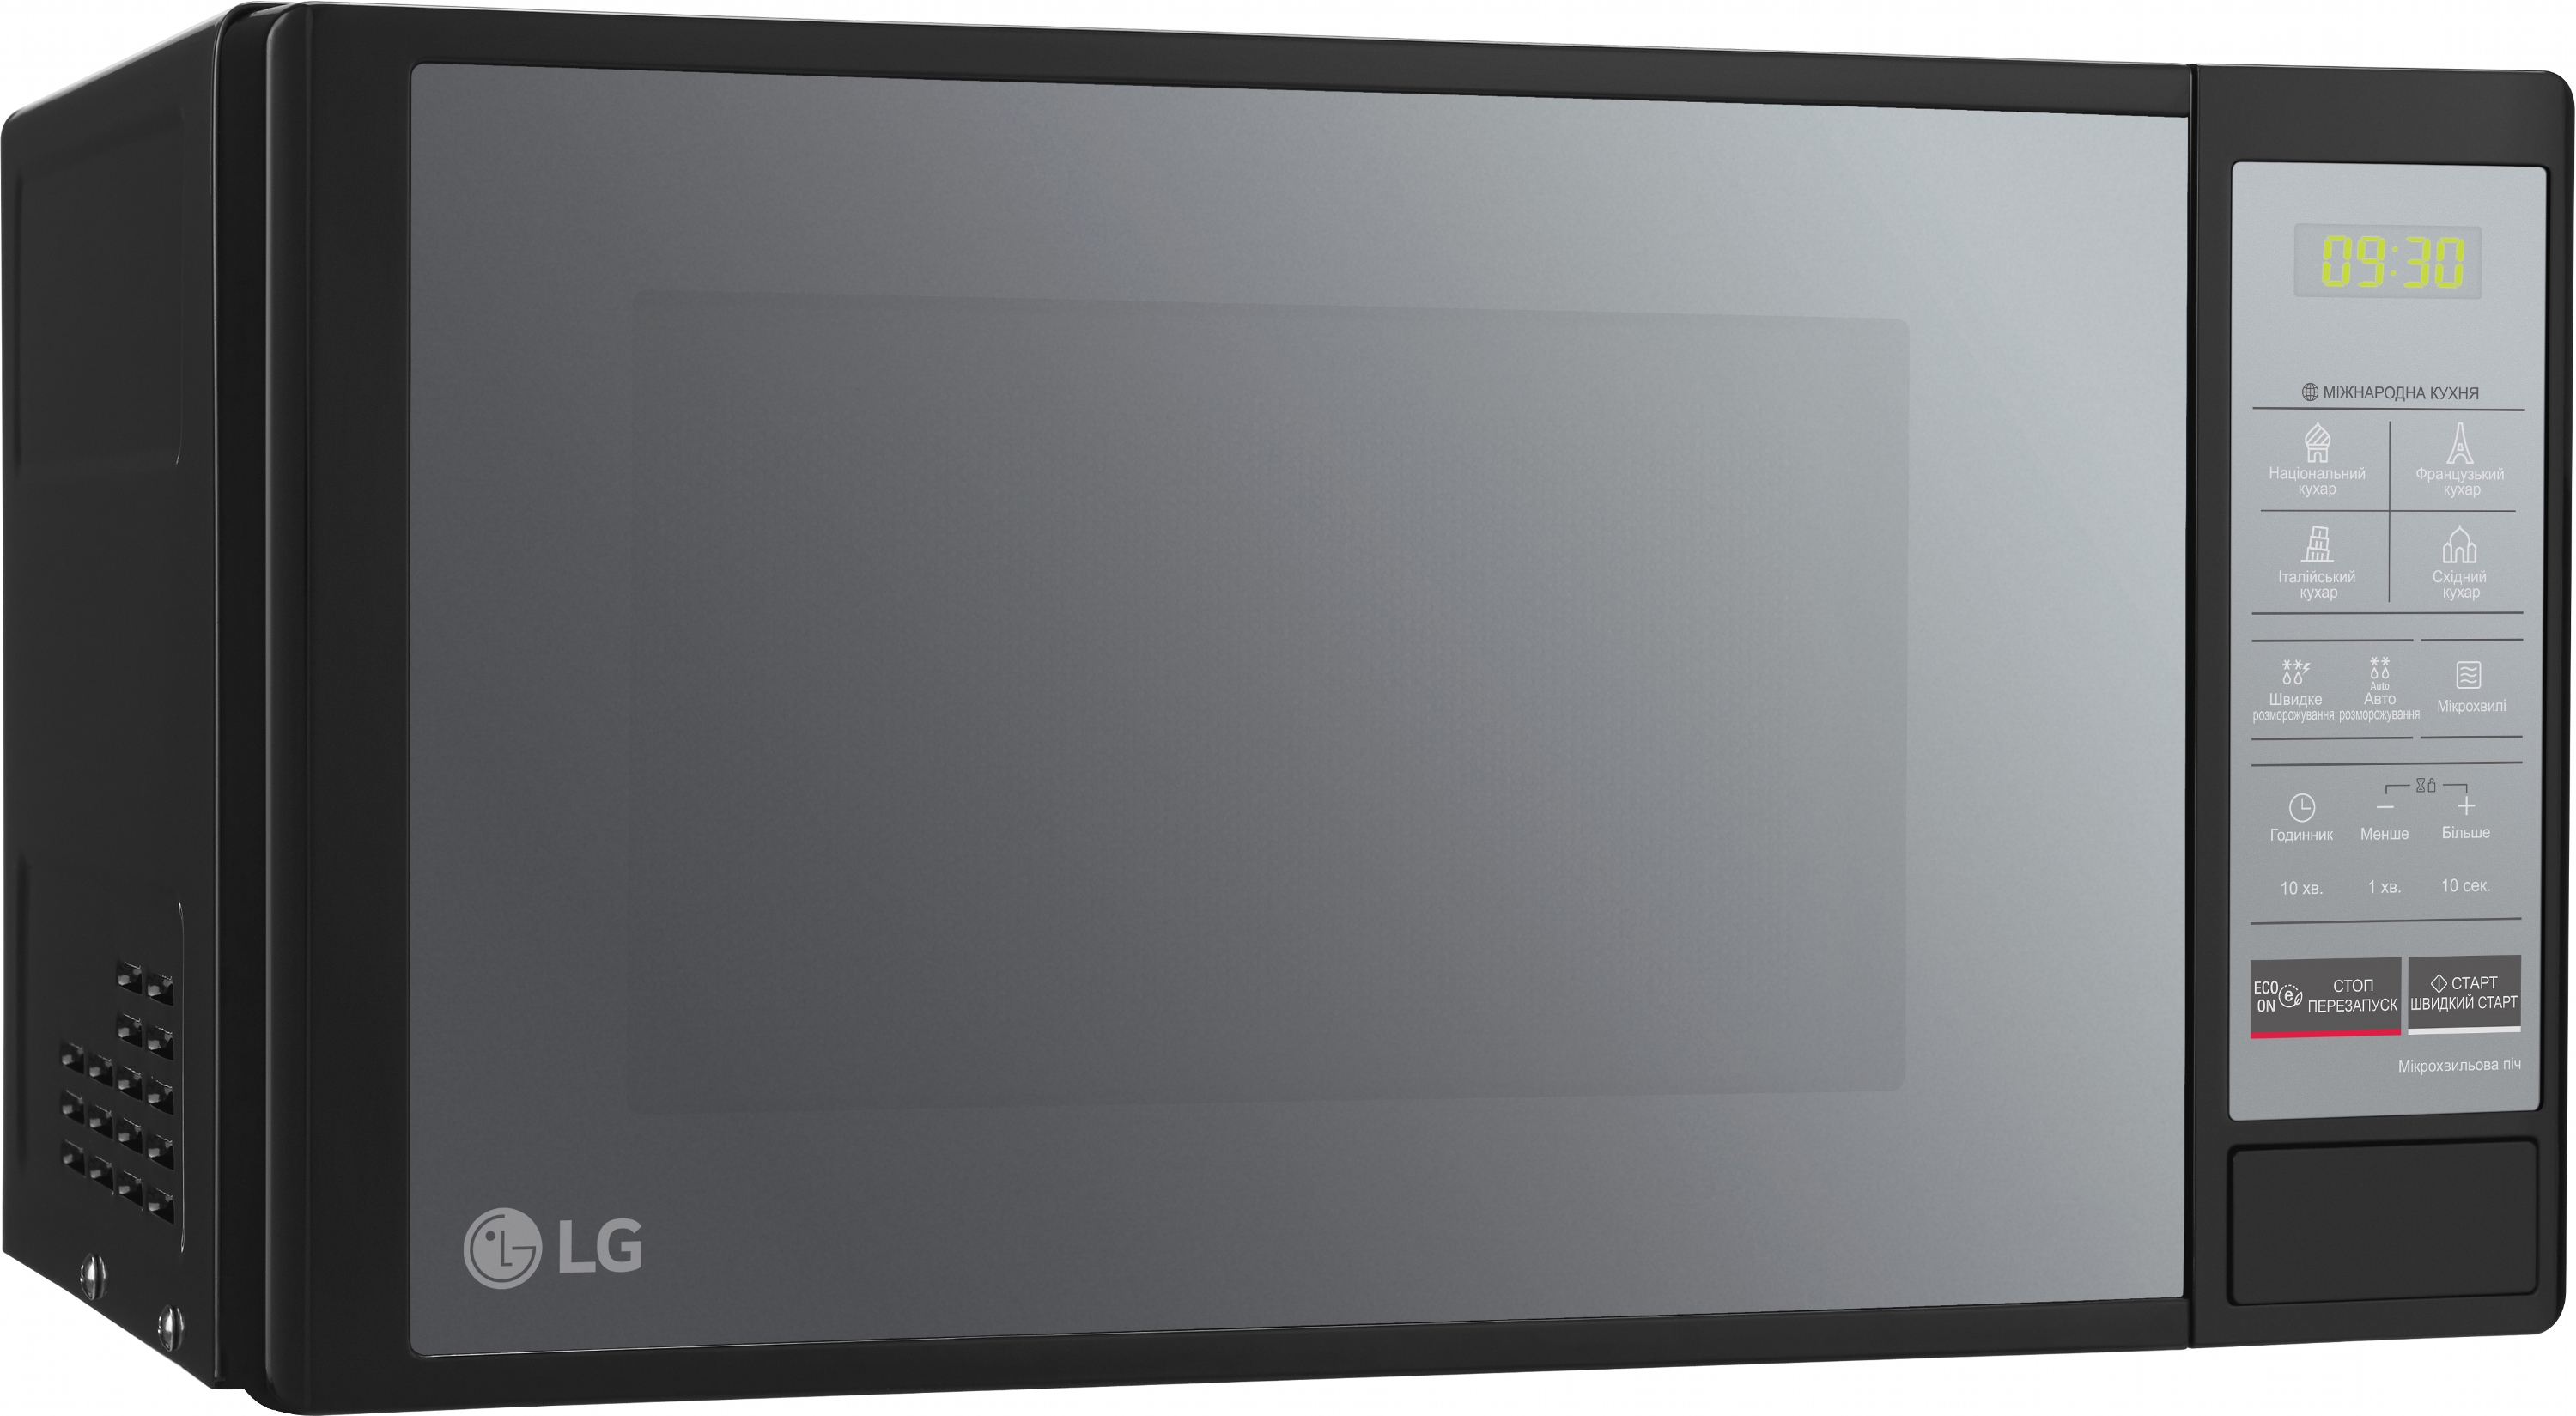 Микроволновая печь LG MS2042DARB отзывы - изображения 5